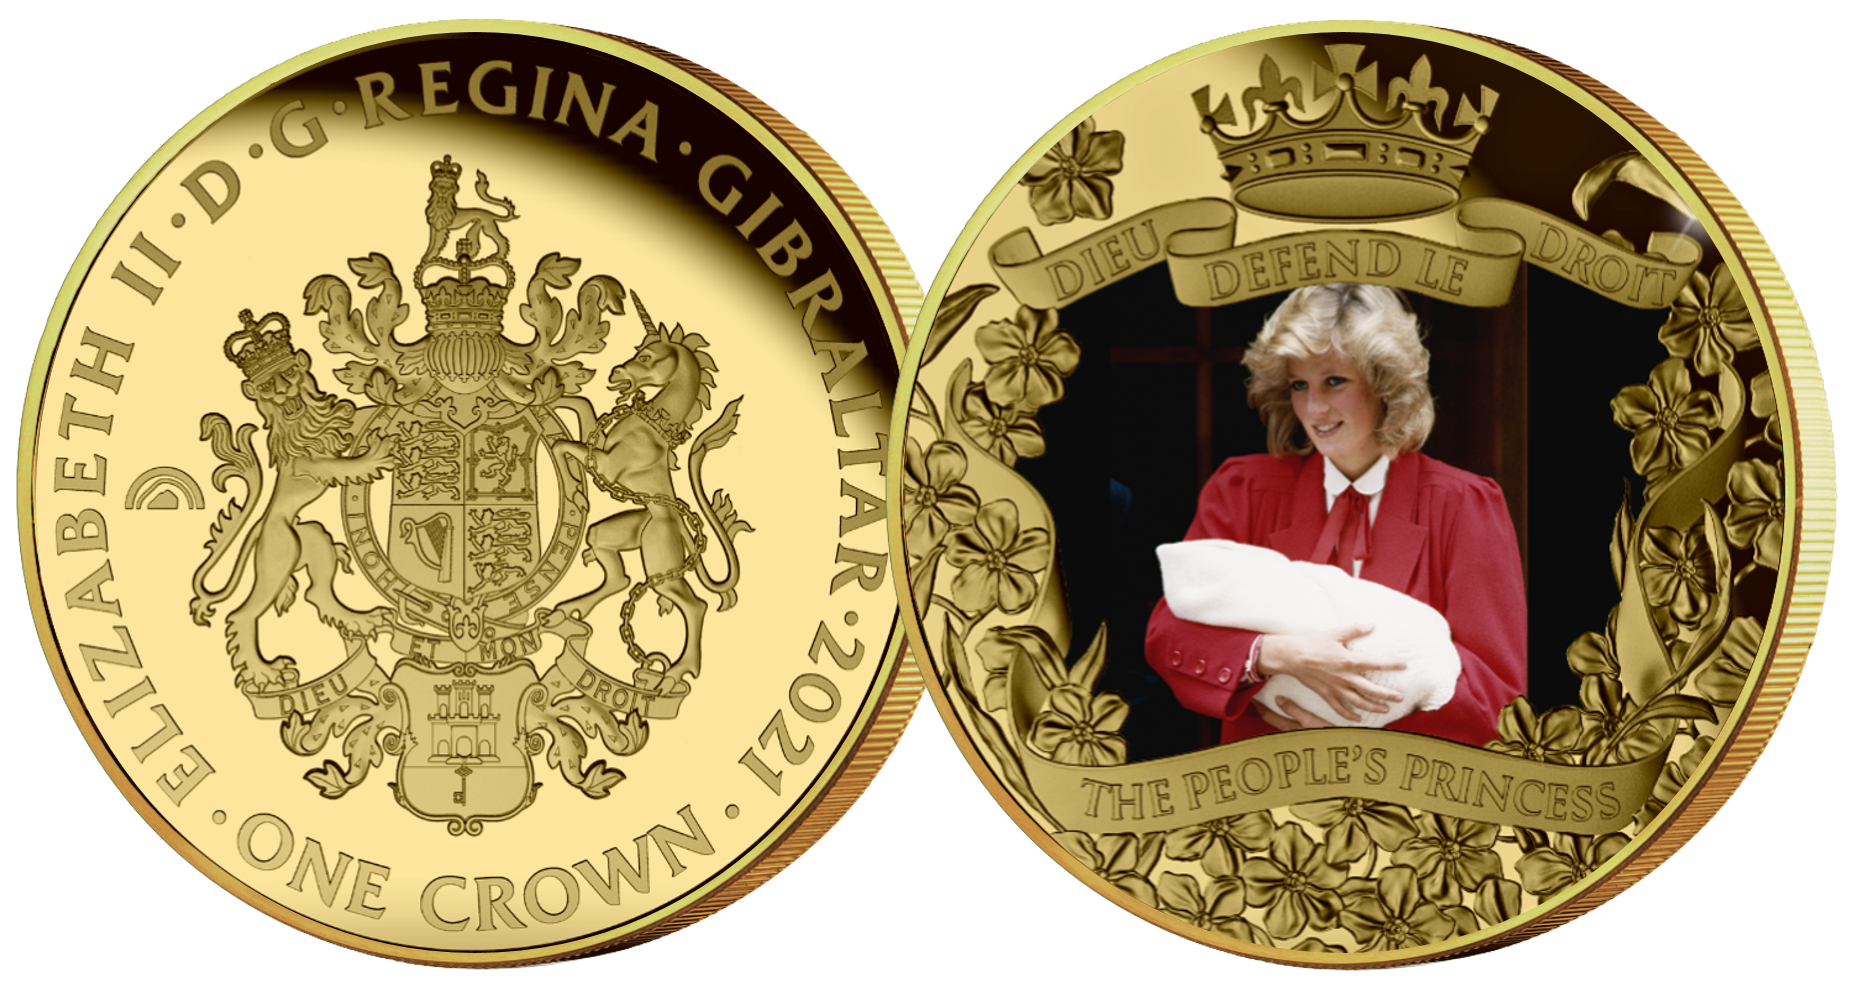 En smuk dedikation til folkets prinsesse, Diana - Verdens første møntsamling præget i humanium. første-i-sin-slags mønt udgivelse der aktivt støtter fremtidens børn - en sag tæt på Dianas hjerte.